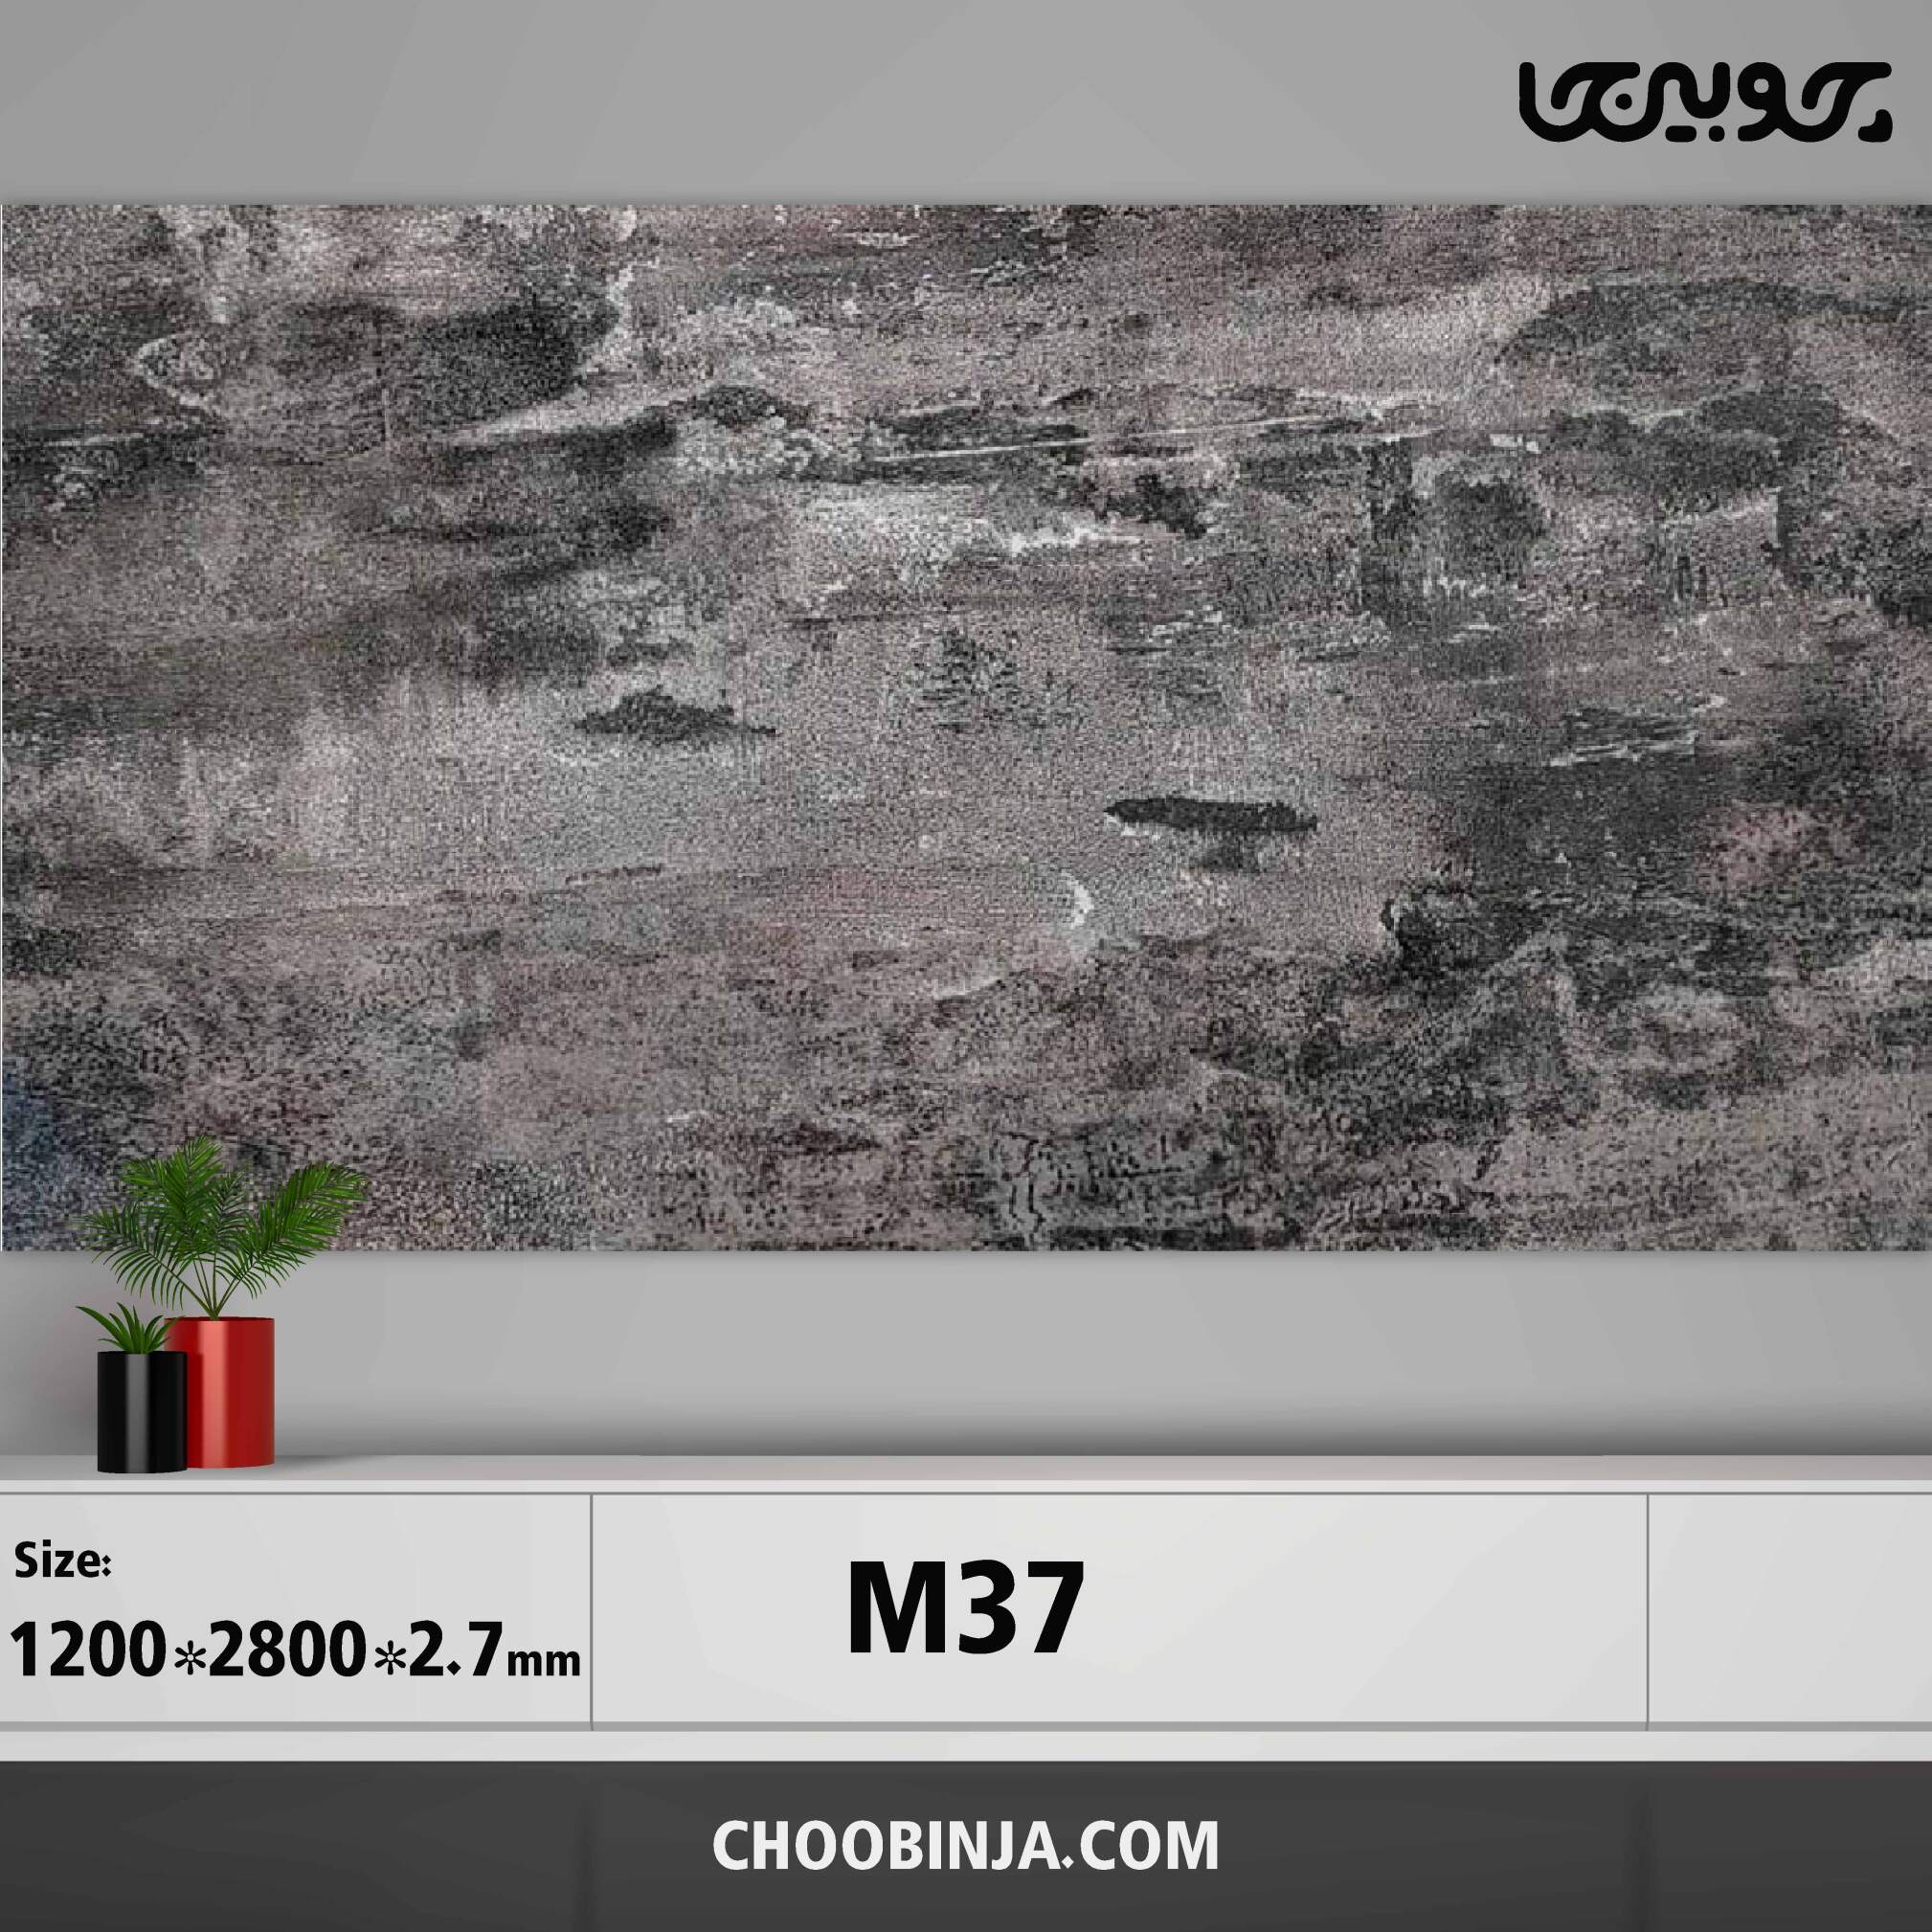  دیوارپوش ماربل شیت کد M37 